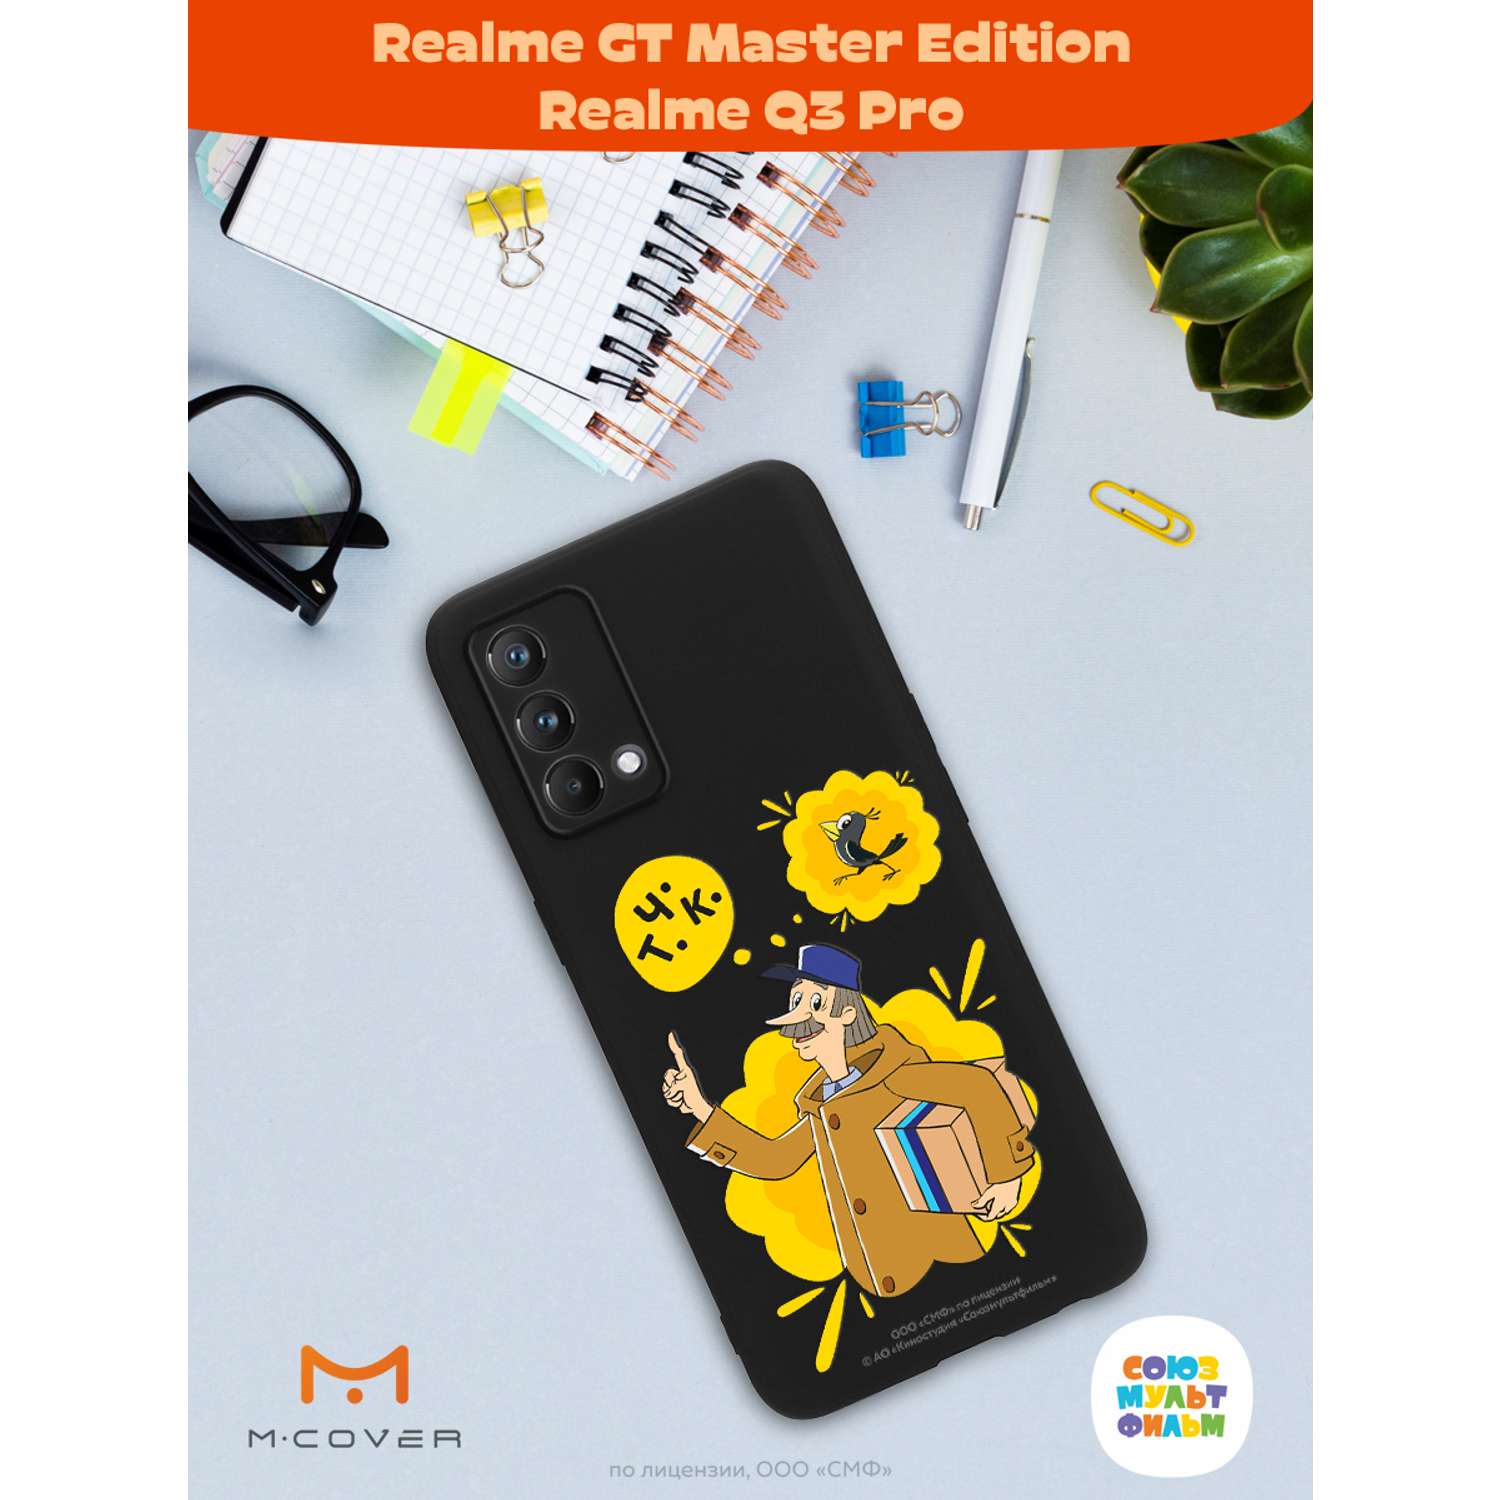 Силиконовый чехол Mcover для смартфона Realme GT Master Edition Q3 Pro Союзмультфильм Говорящая посылка - фото 3